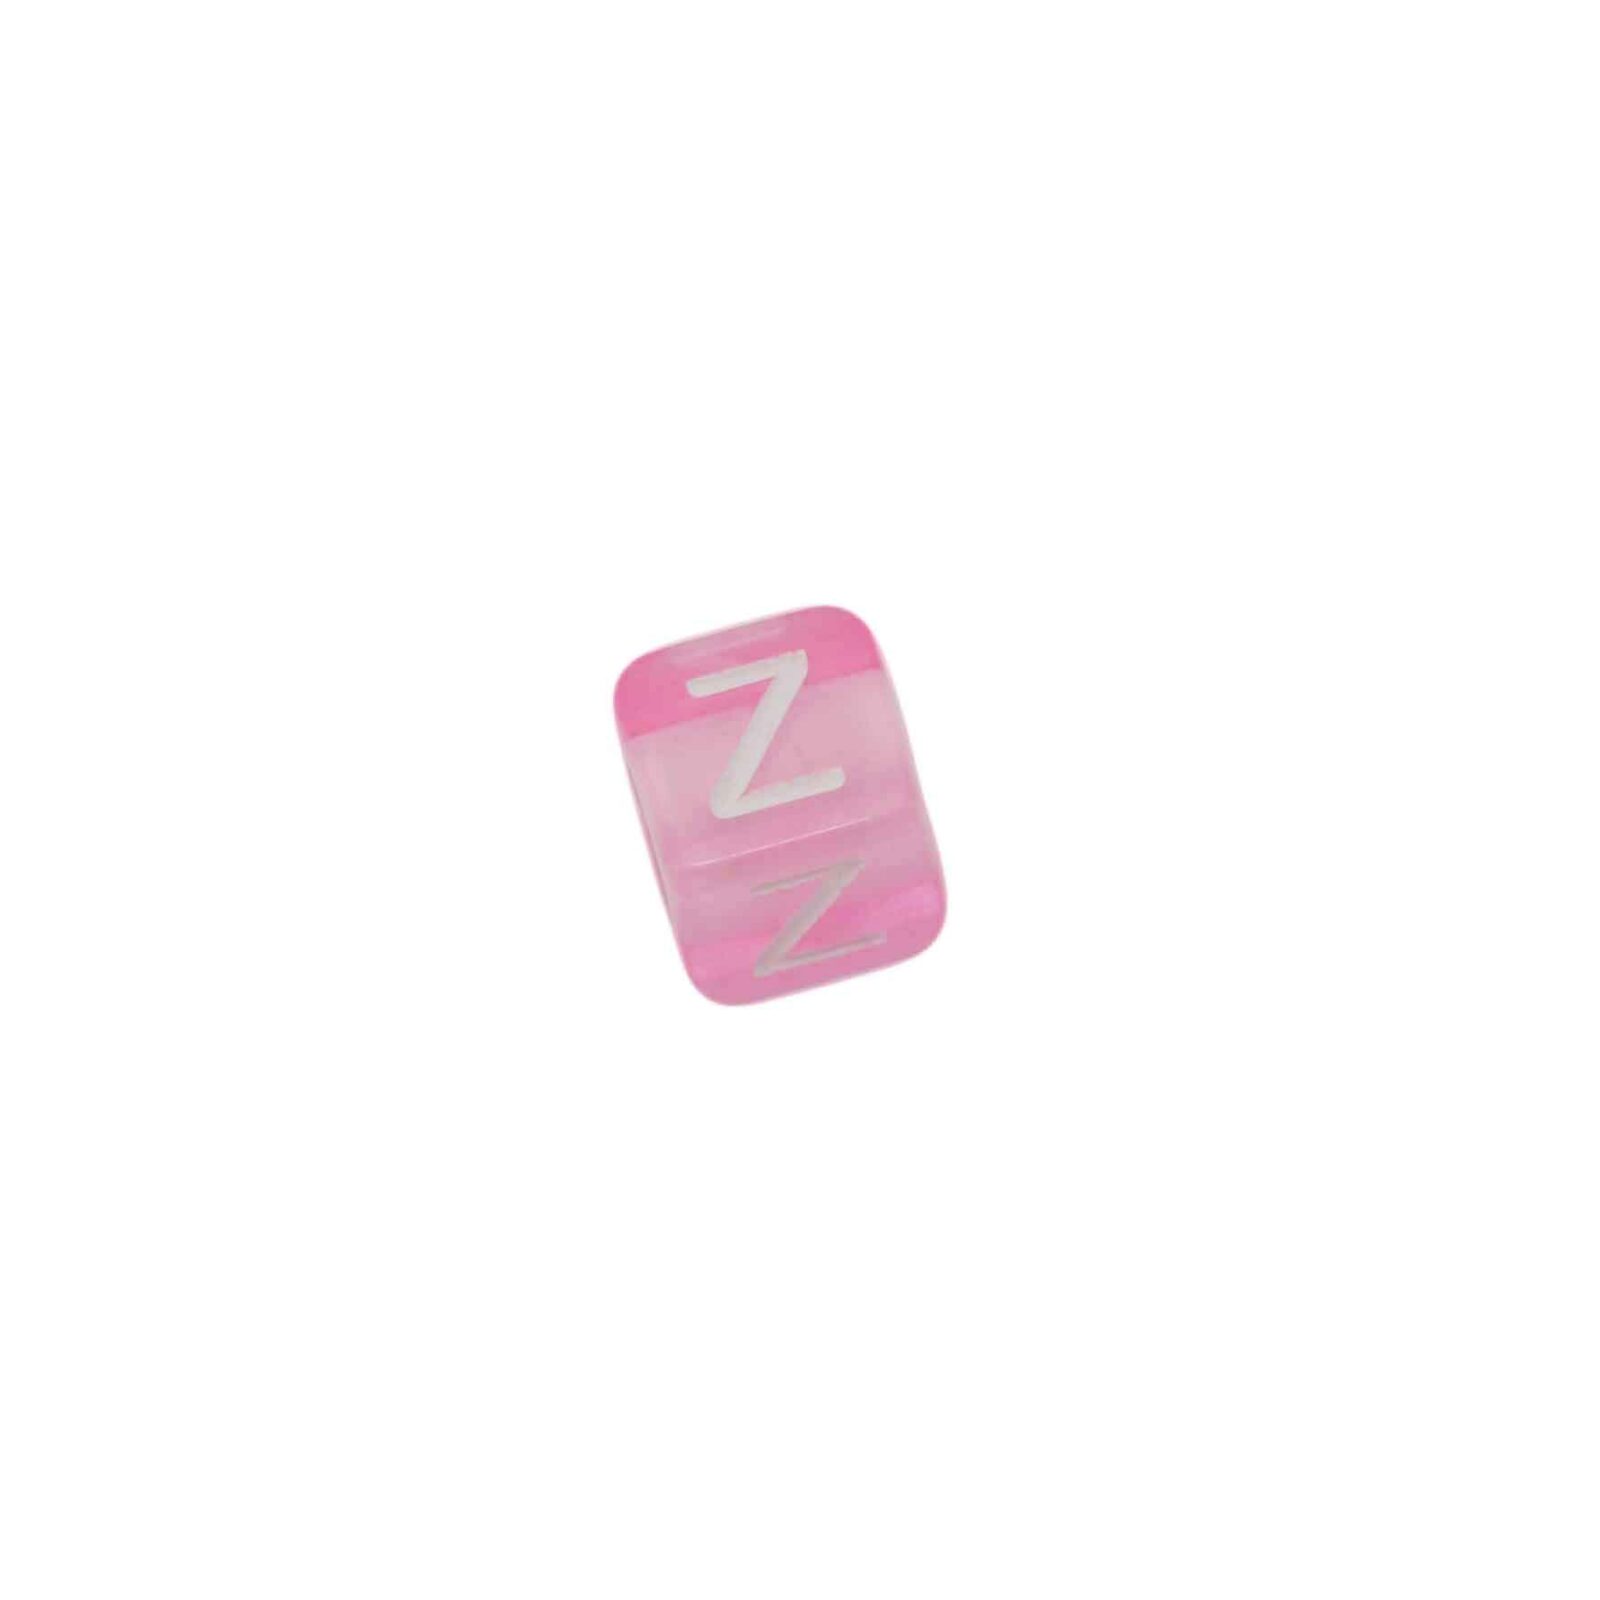 Roze letterkraal Z